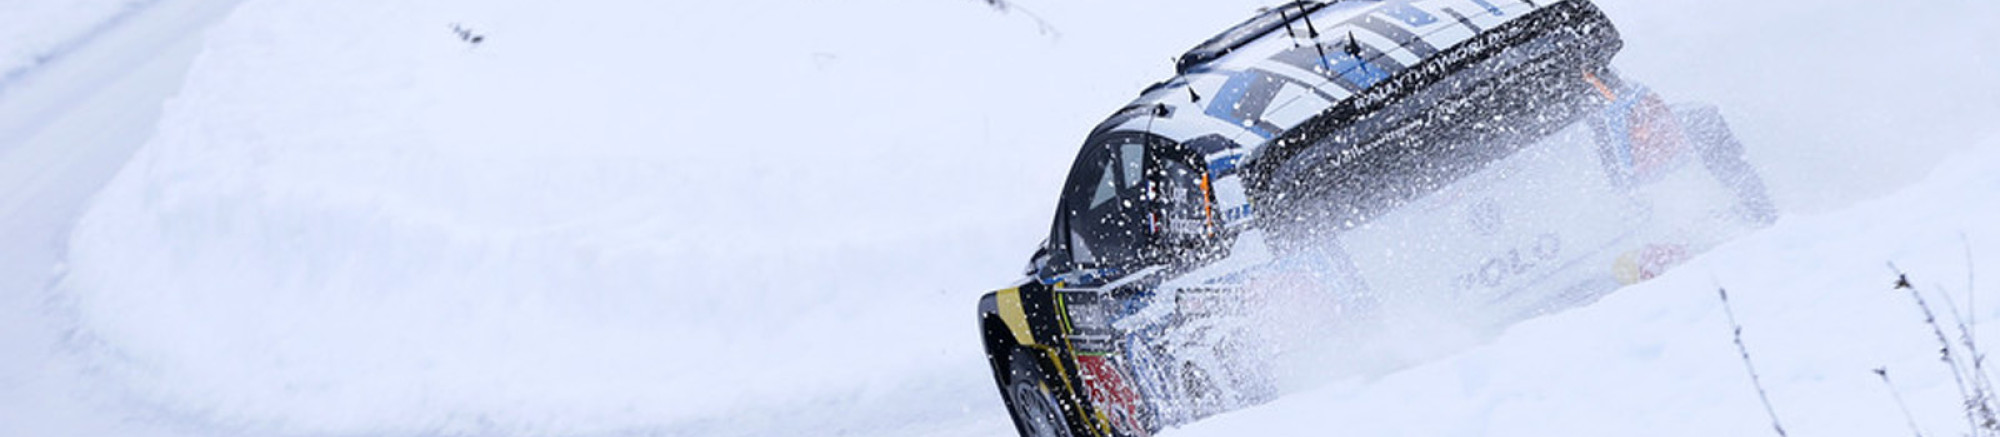 Polo WRC 2015